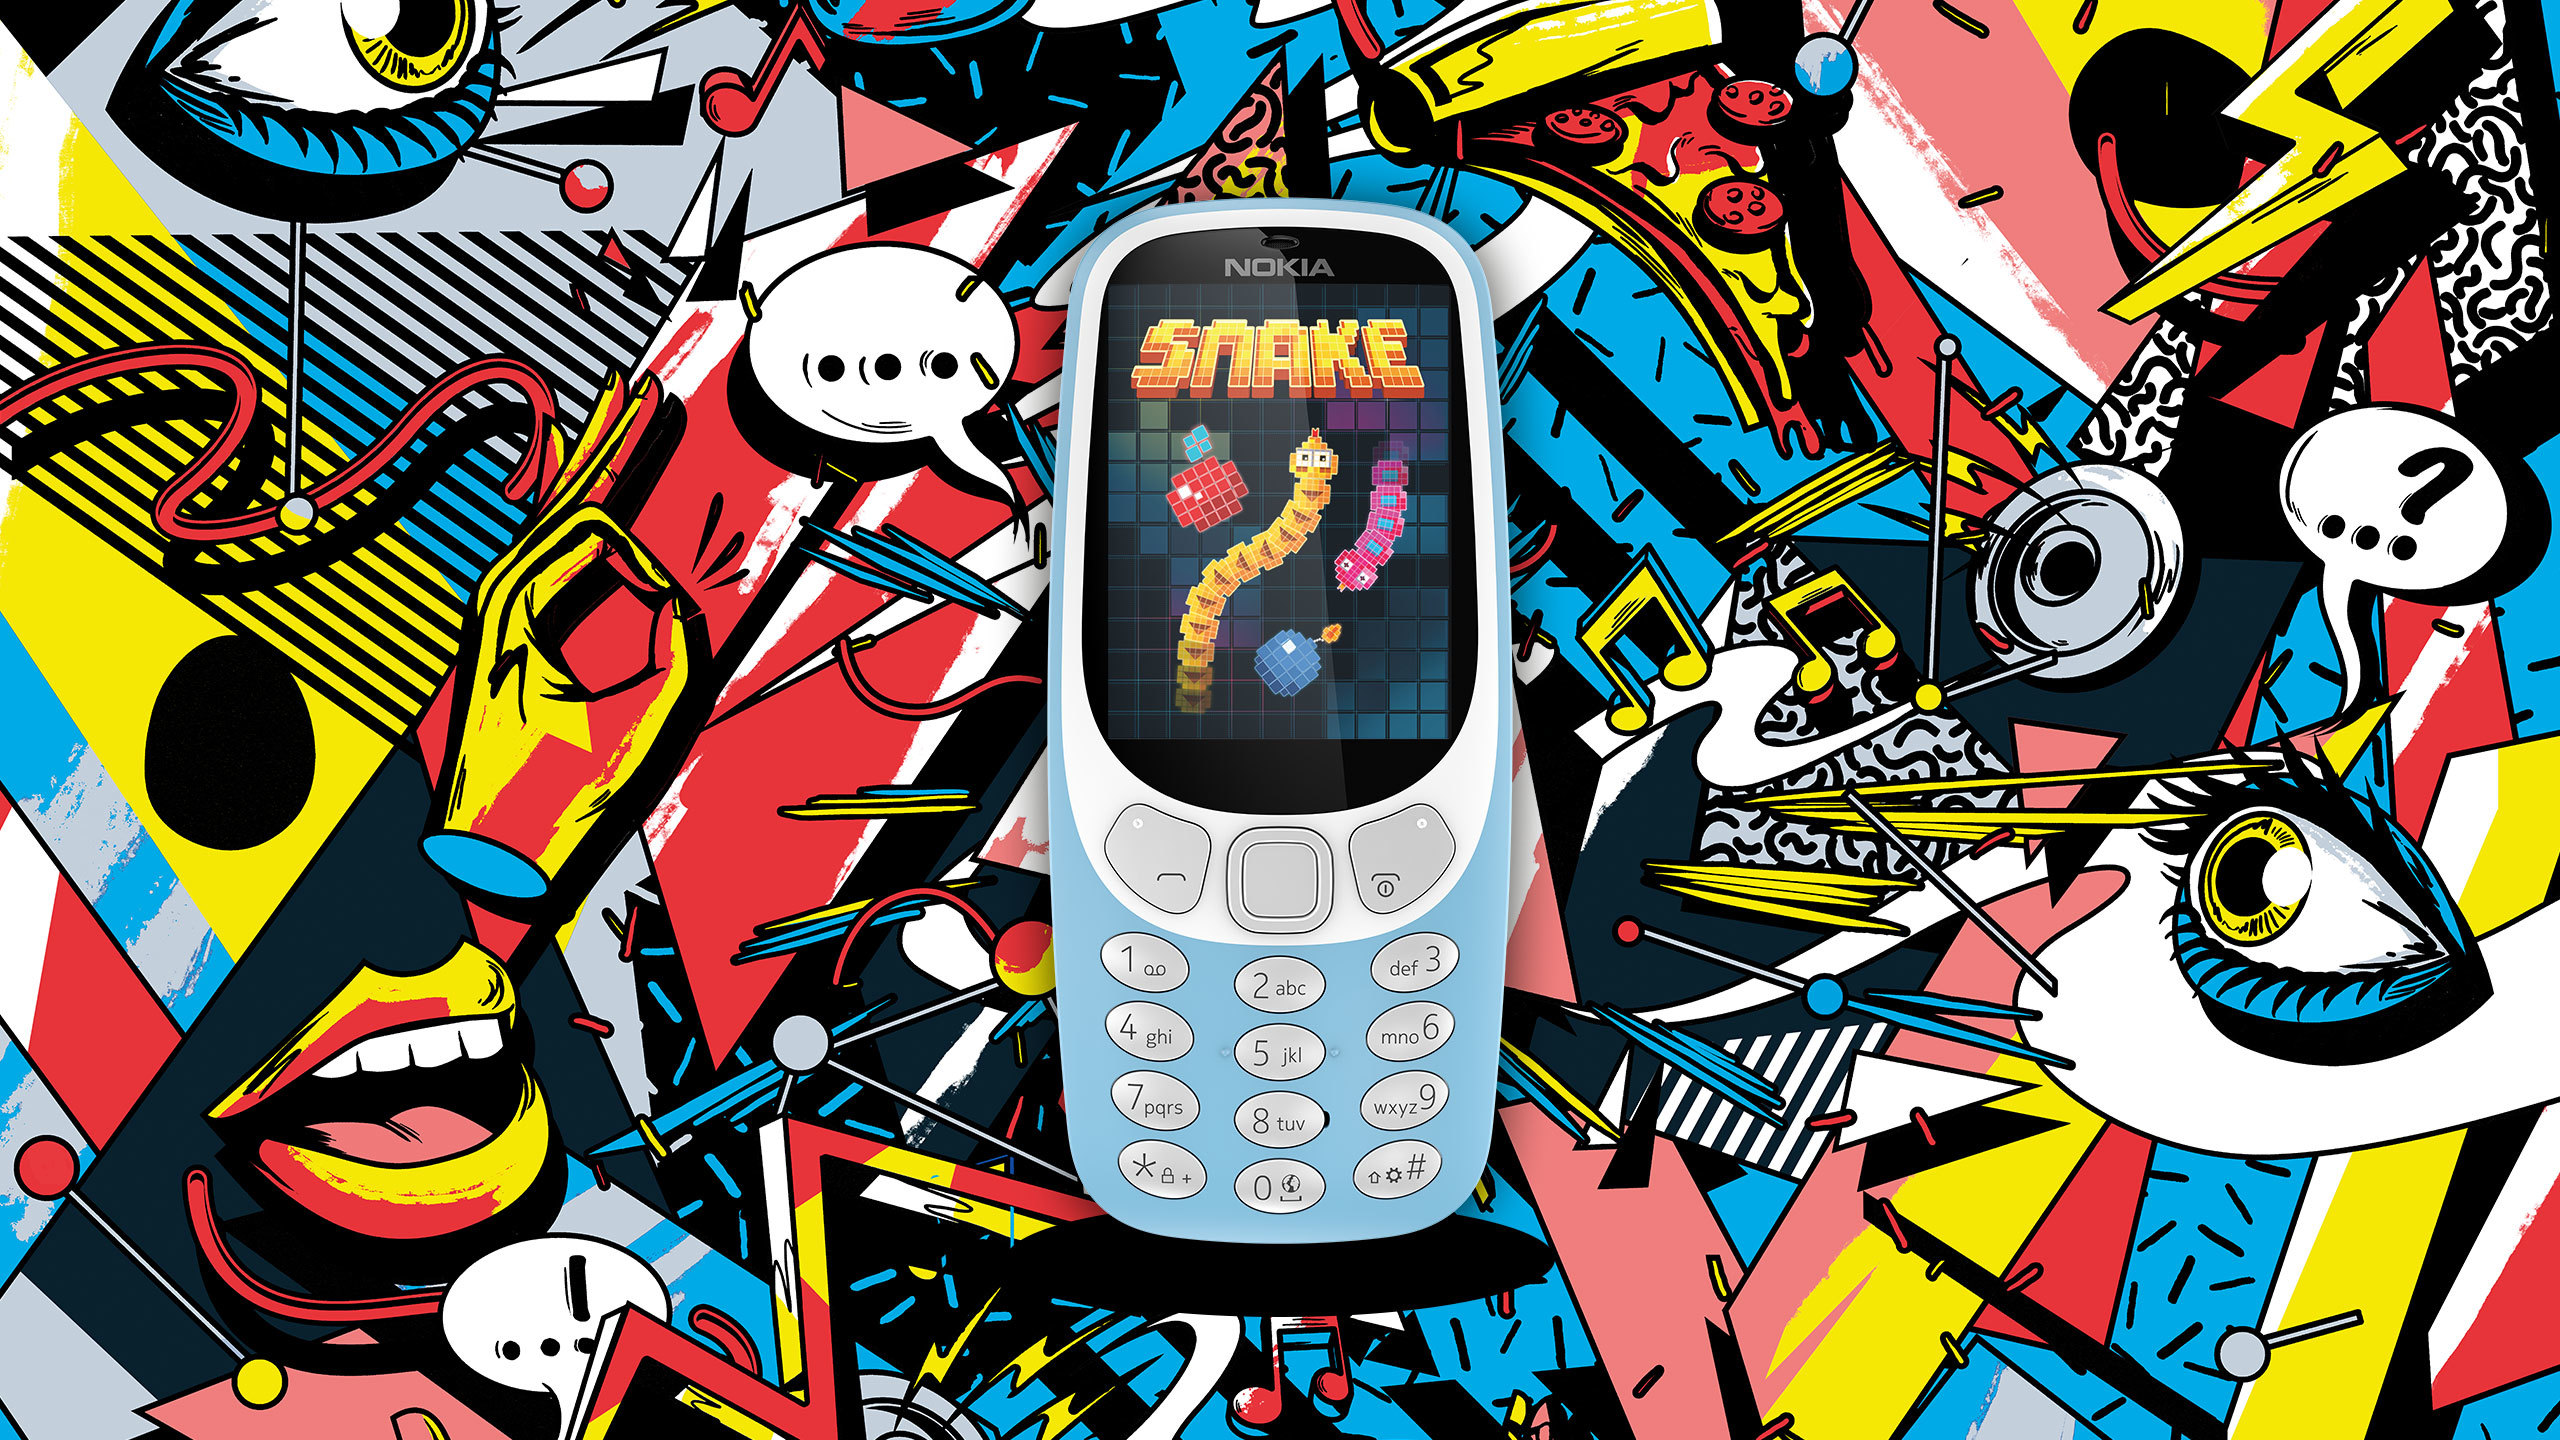 Nokia_3310_3G-Nostalgia-Snake